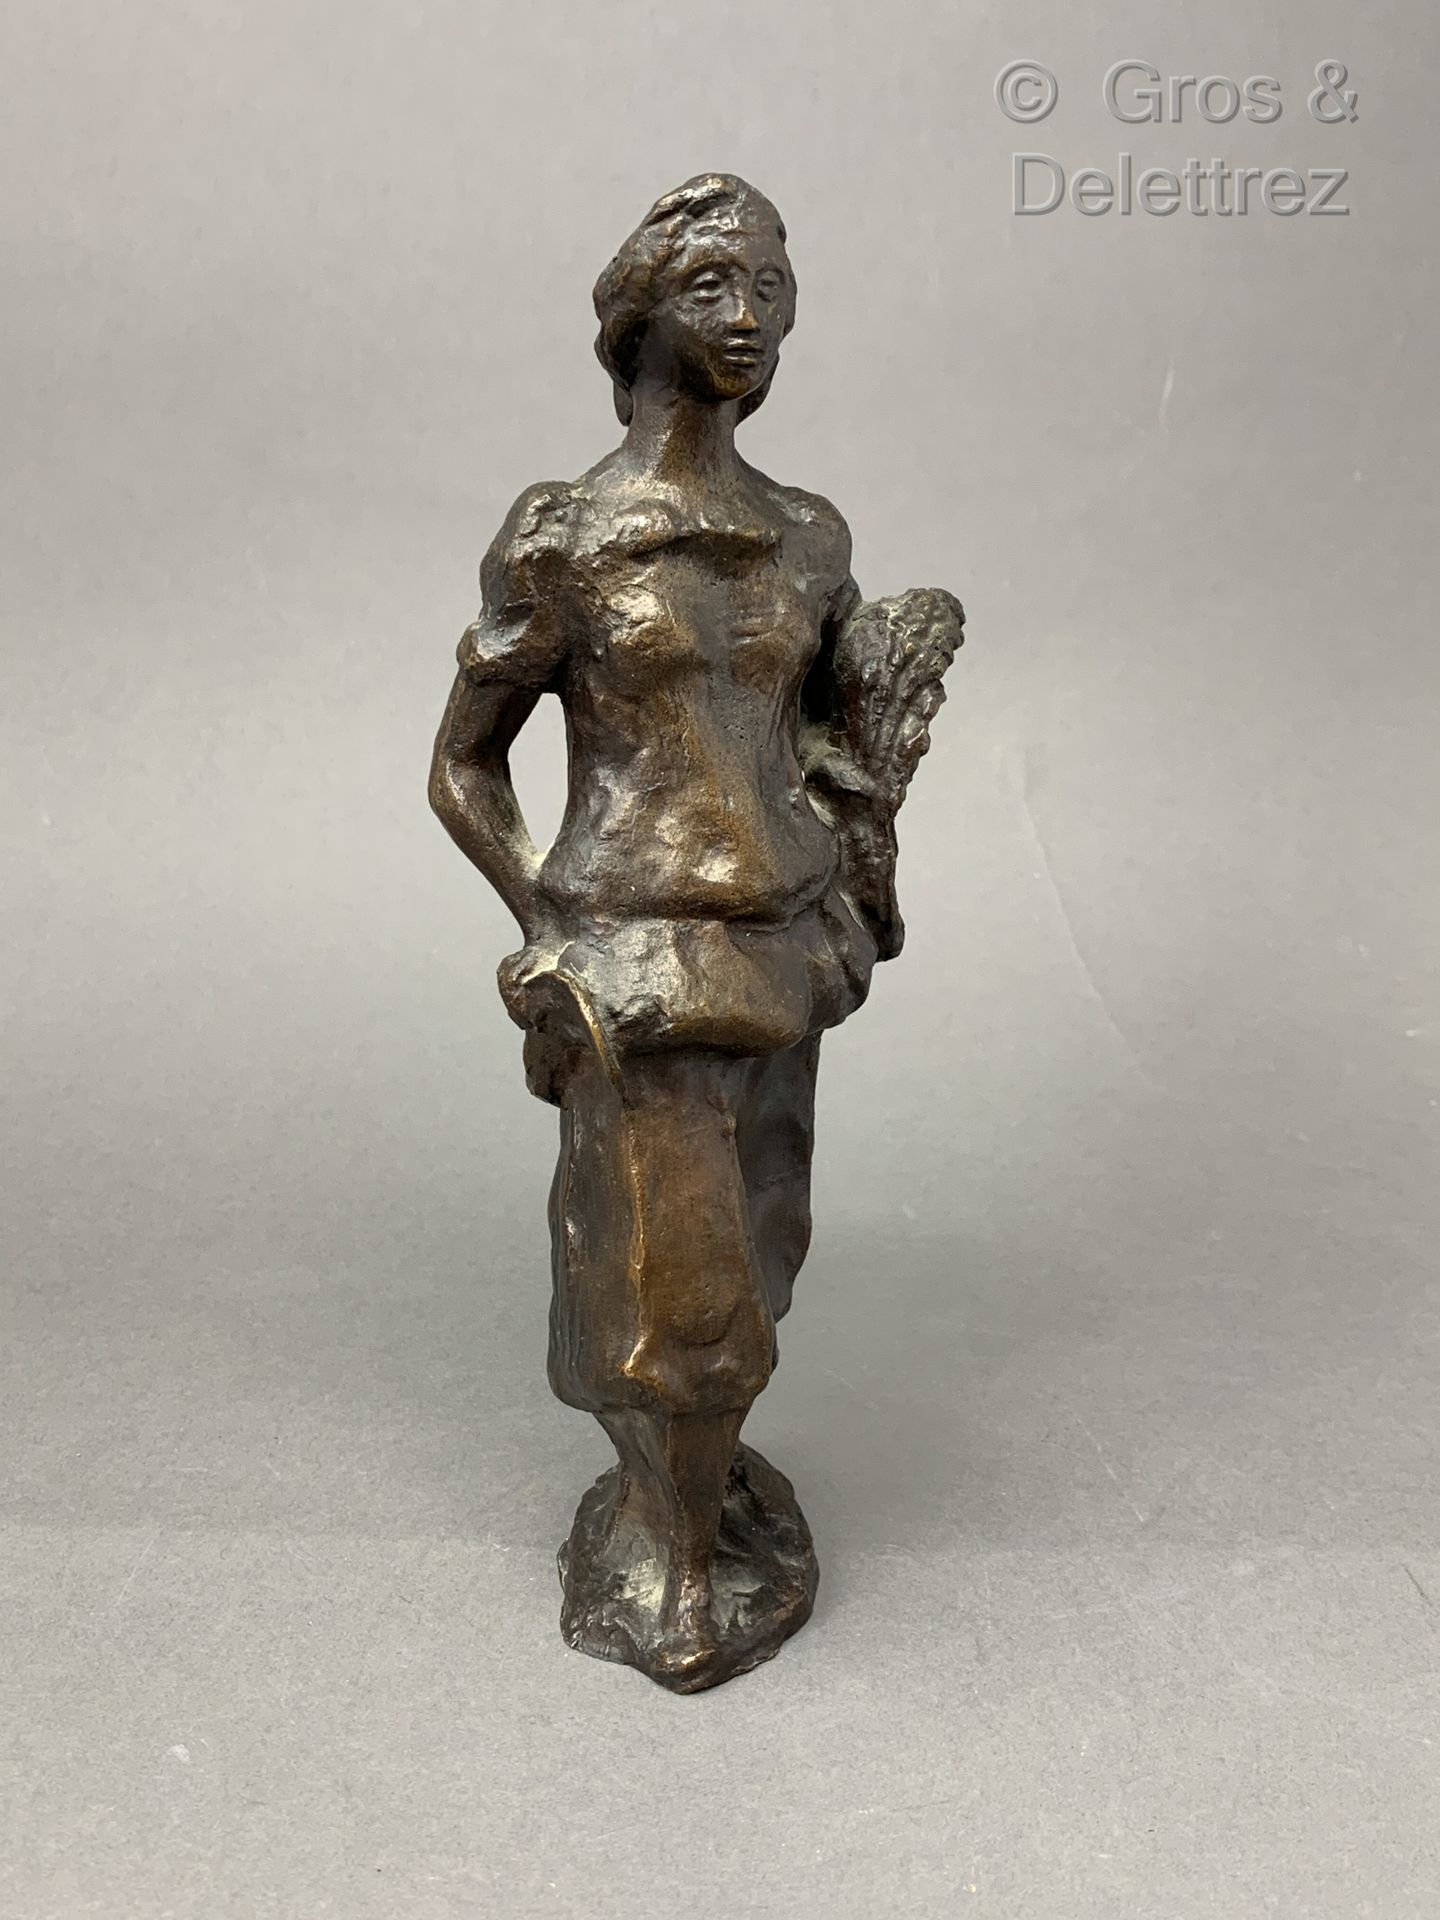 Null OBRA FRANCESA 1930-1940

Escultura de bronce con pátina marrón de una mujer&hellip;